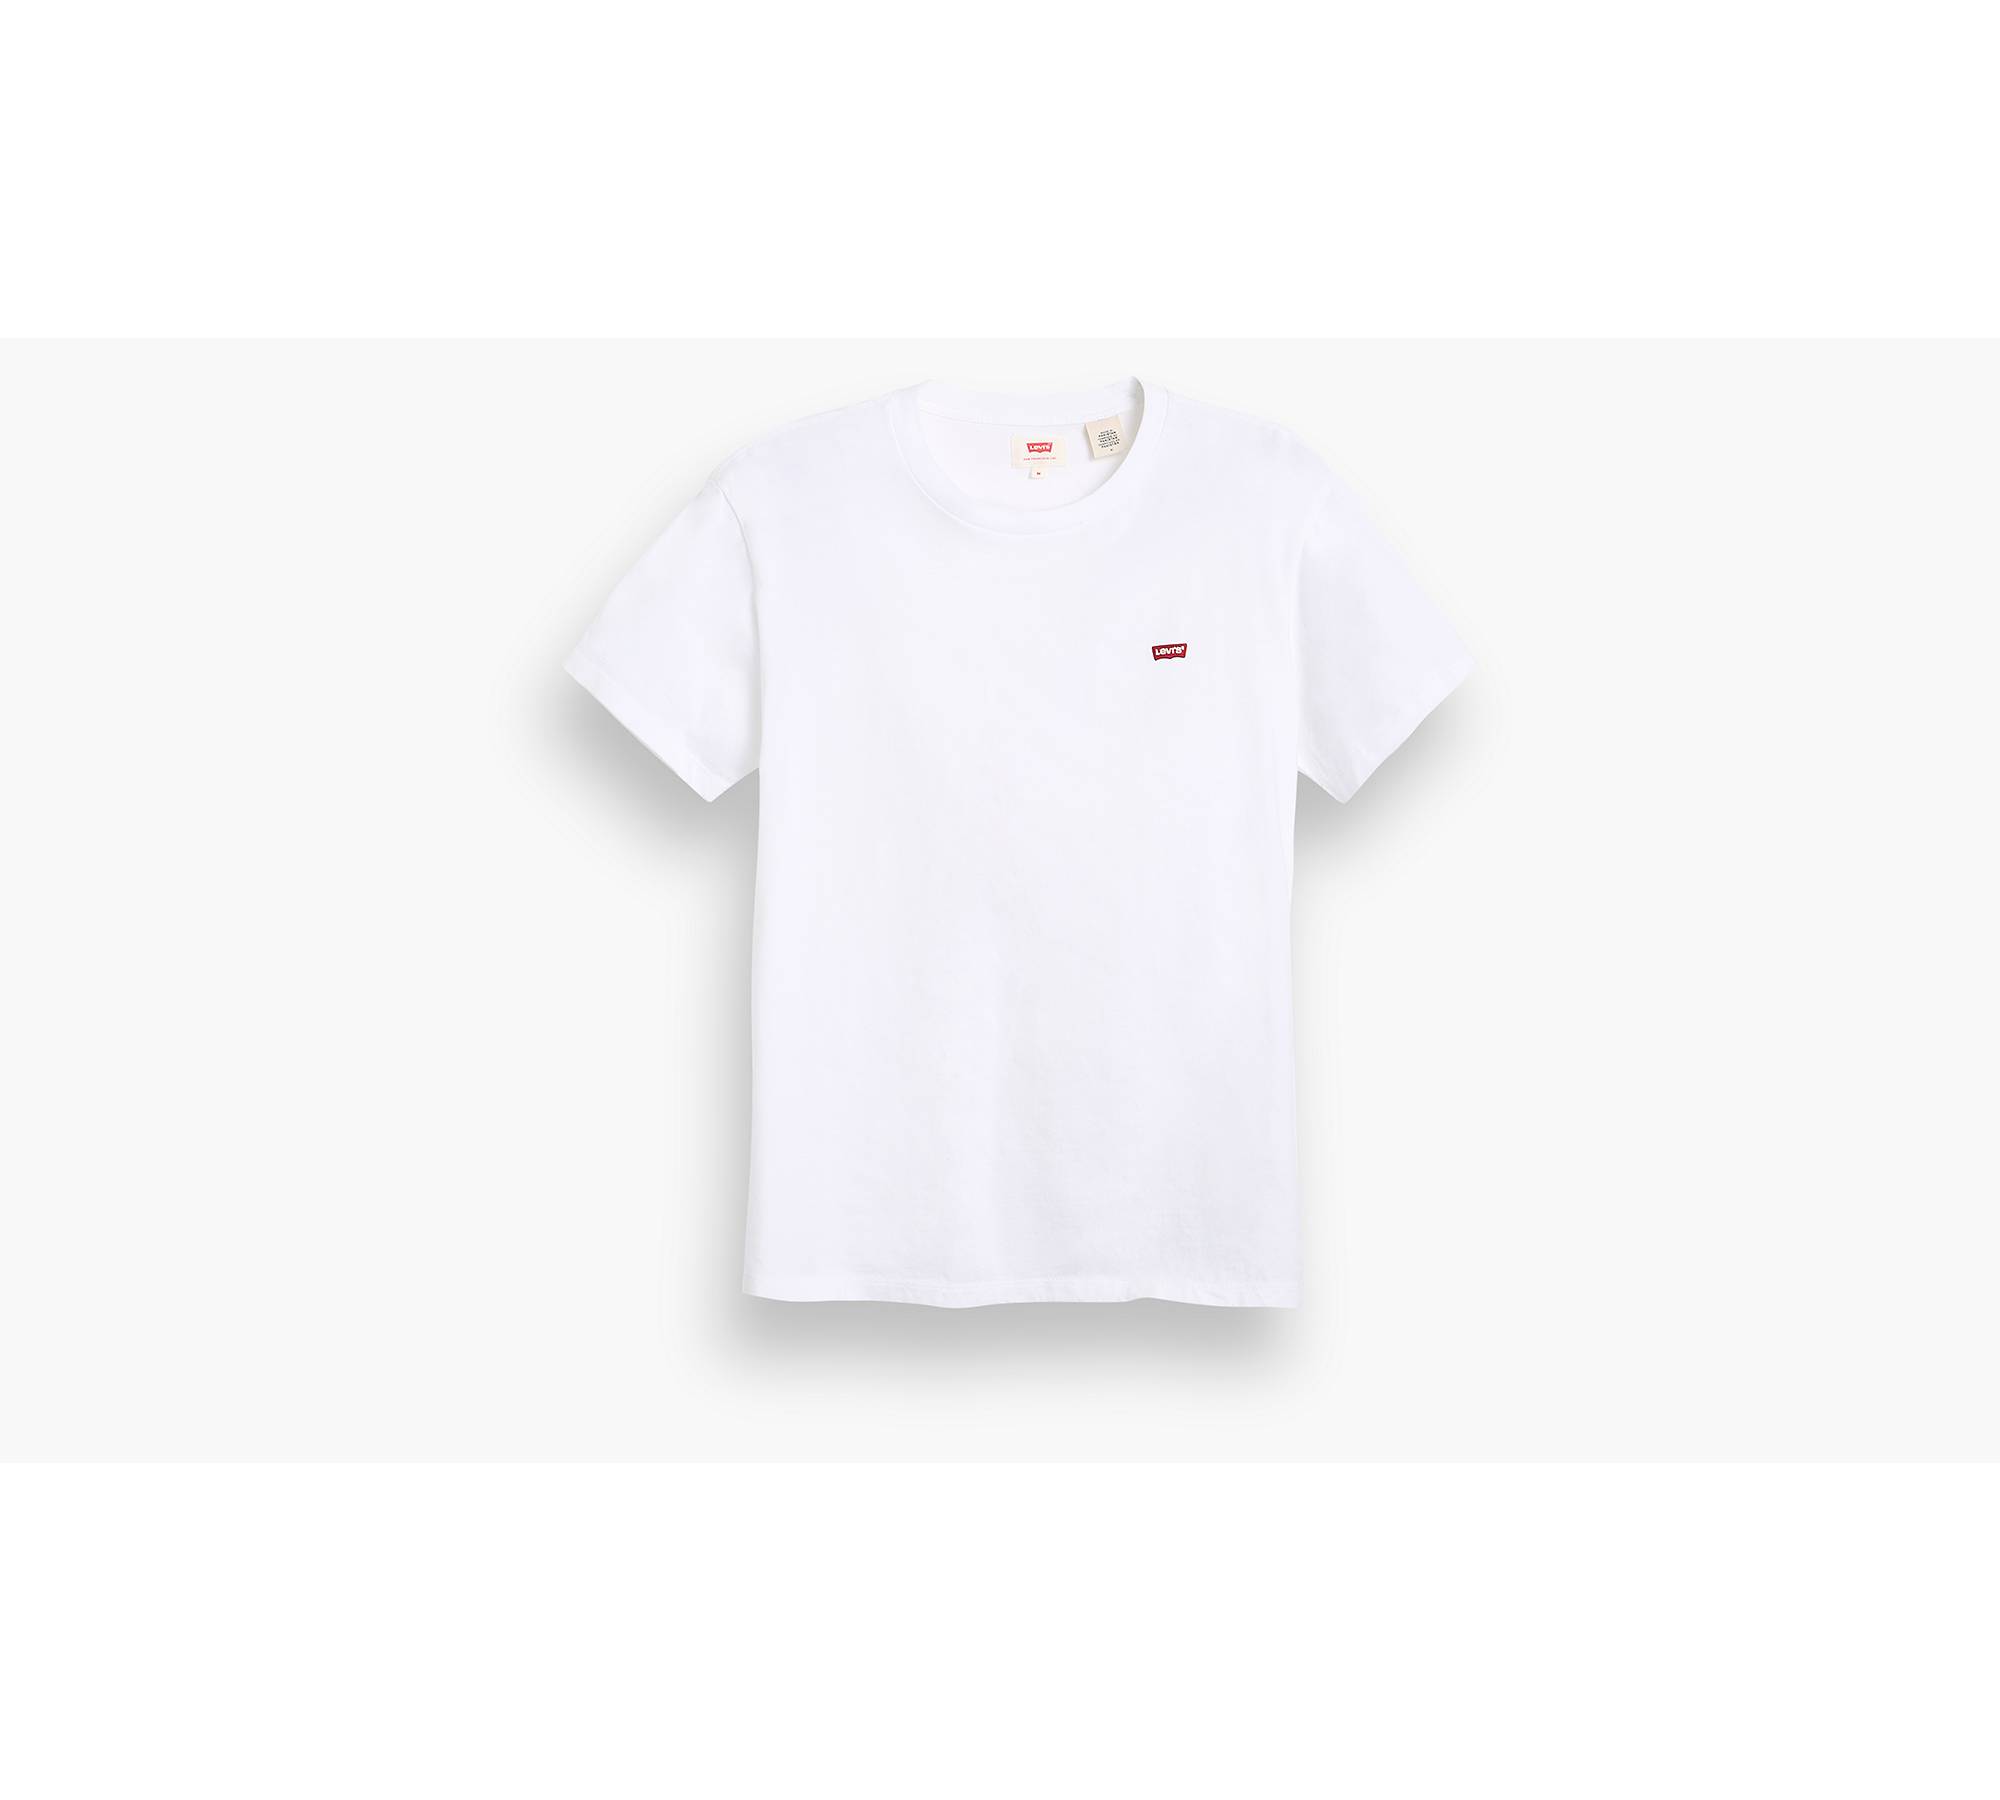 Levi's Homme T-shirt original, Blanc